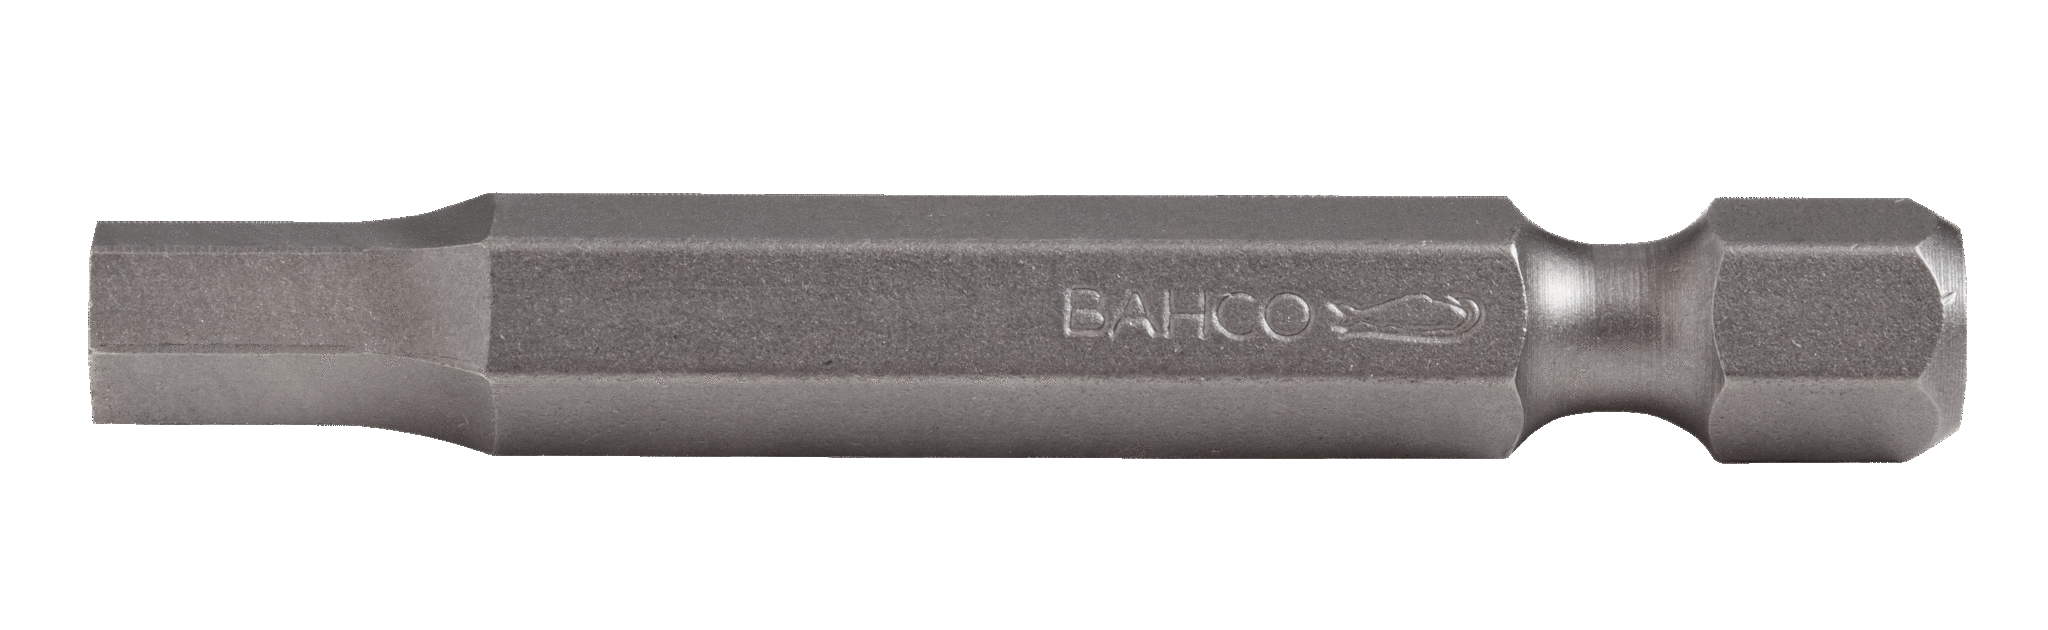 картинка Стандартные биты для отверток под винты с шестигранной головкой, дюймовые размеры, 50 мм BAHCO 59S/50H5/16 от магазина "Элит-инструмент"